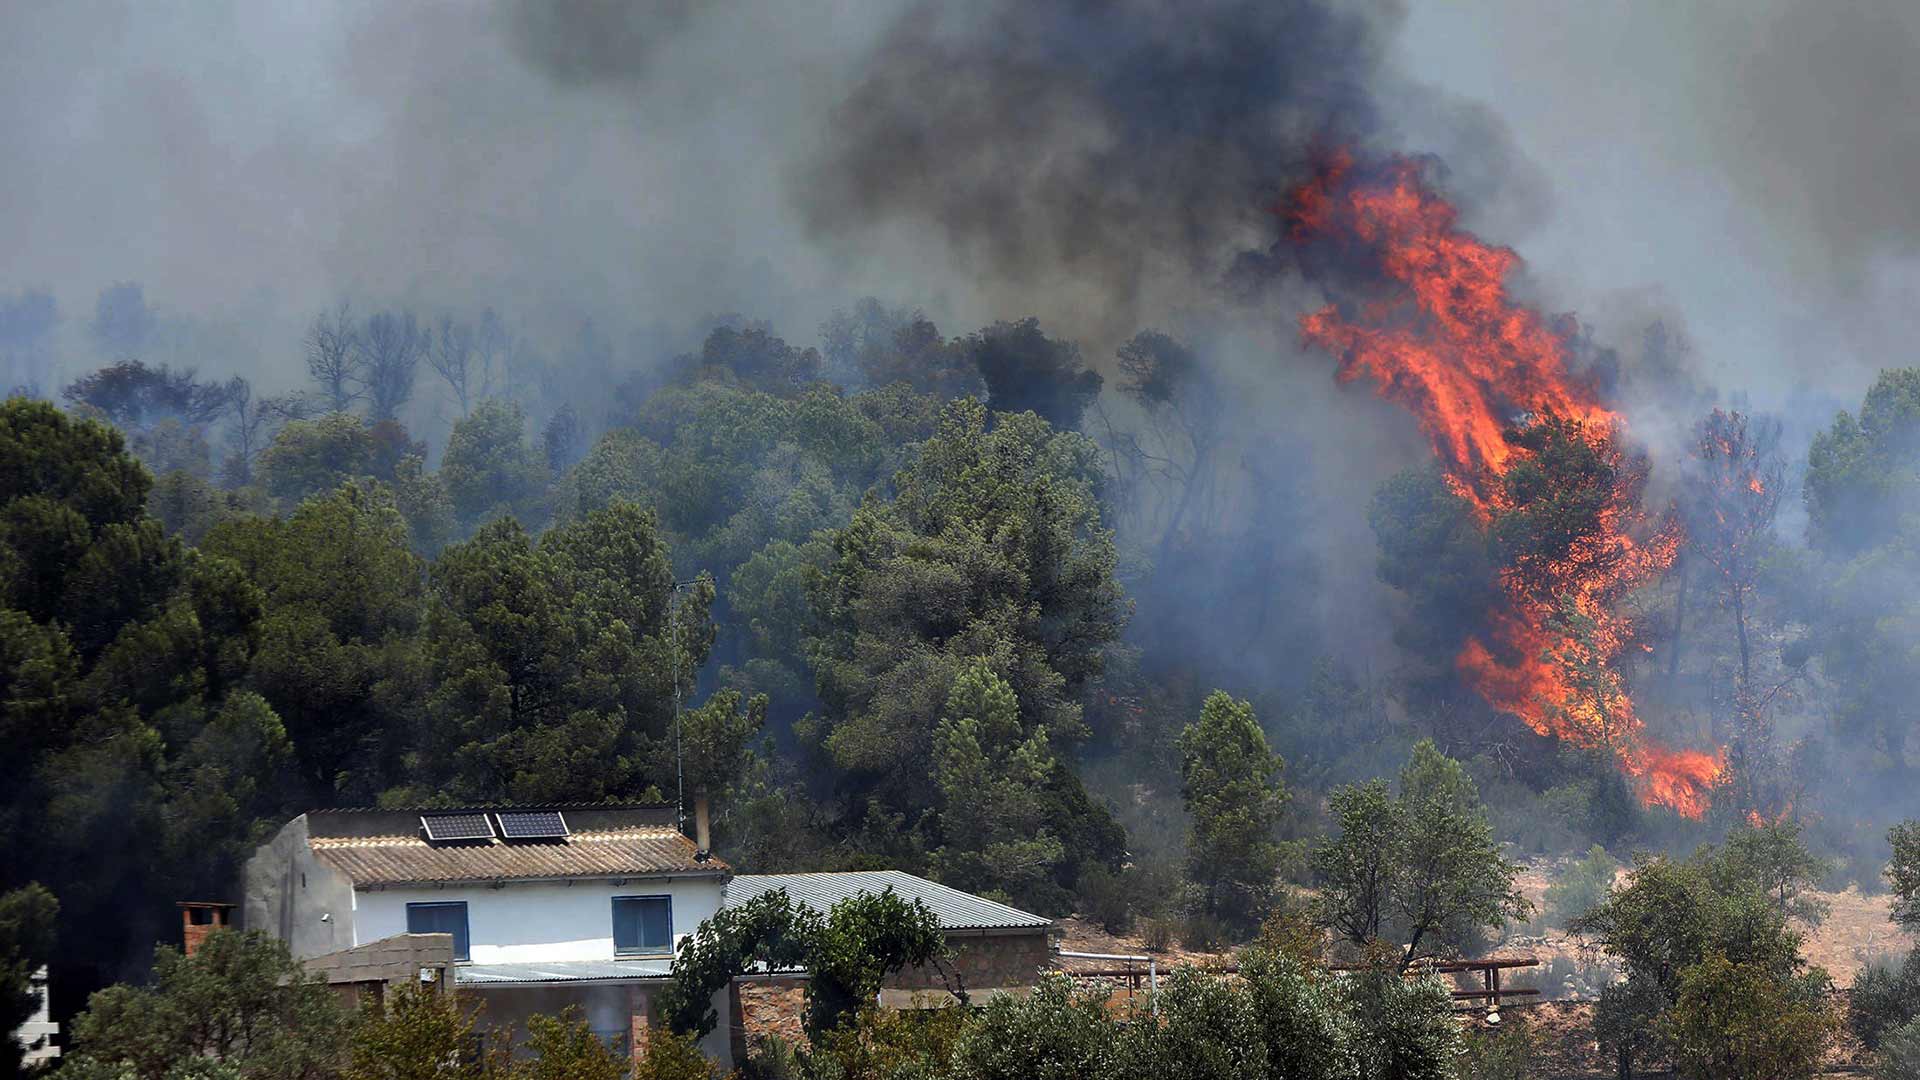 La "mala gestión" del estiércol en una granja de pollos causó el incendio de Tarragona que arrasa ya 5.500 hectáreas